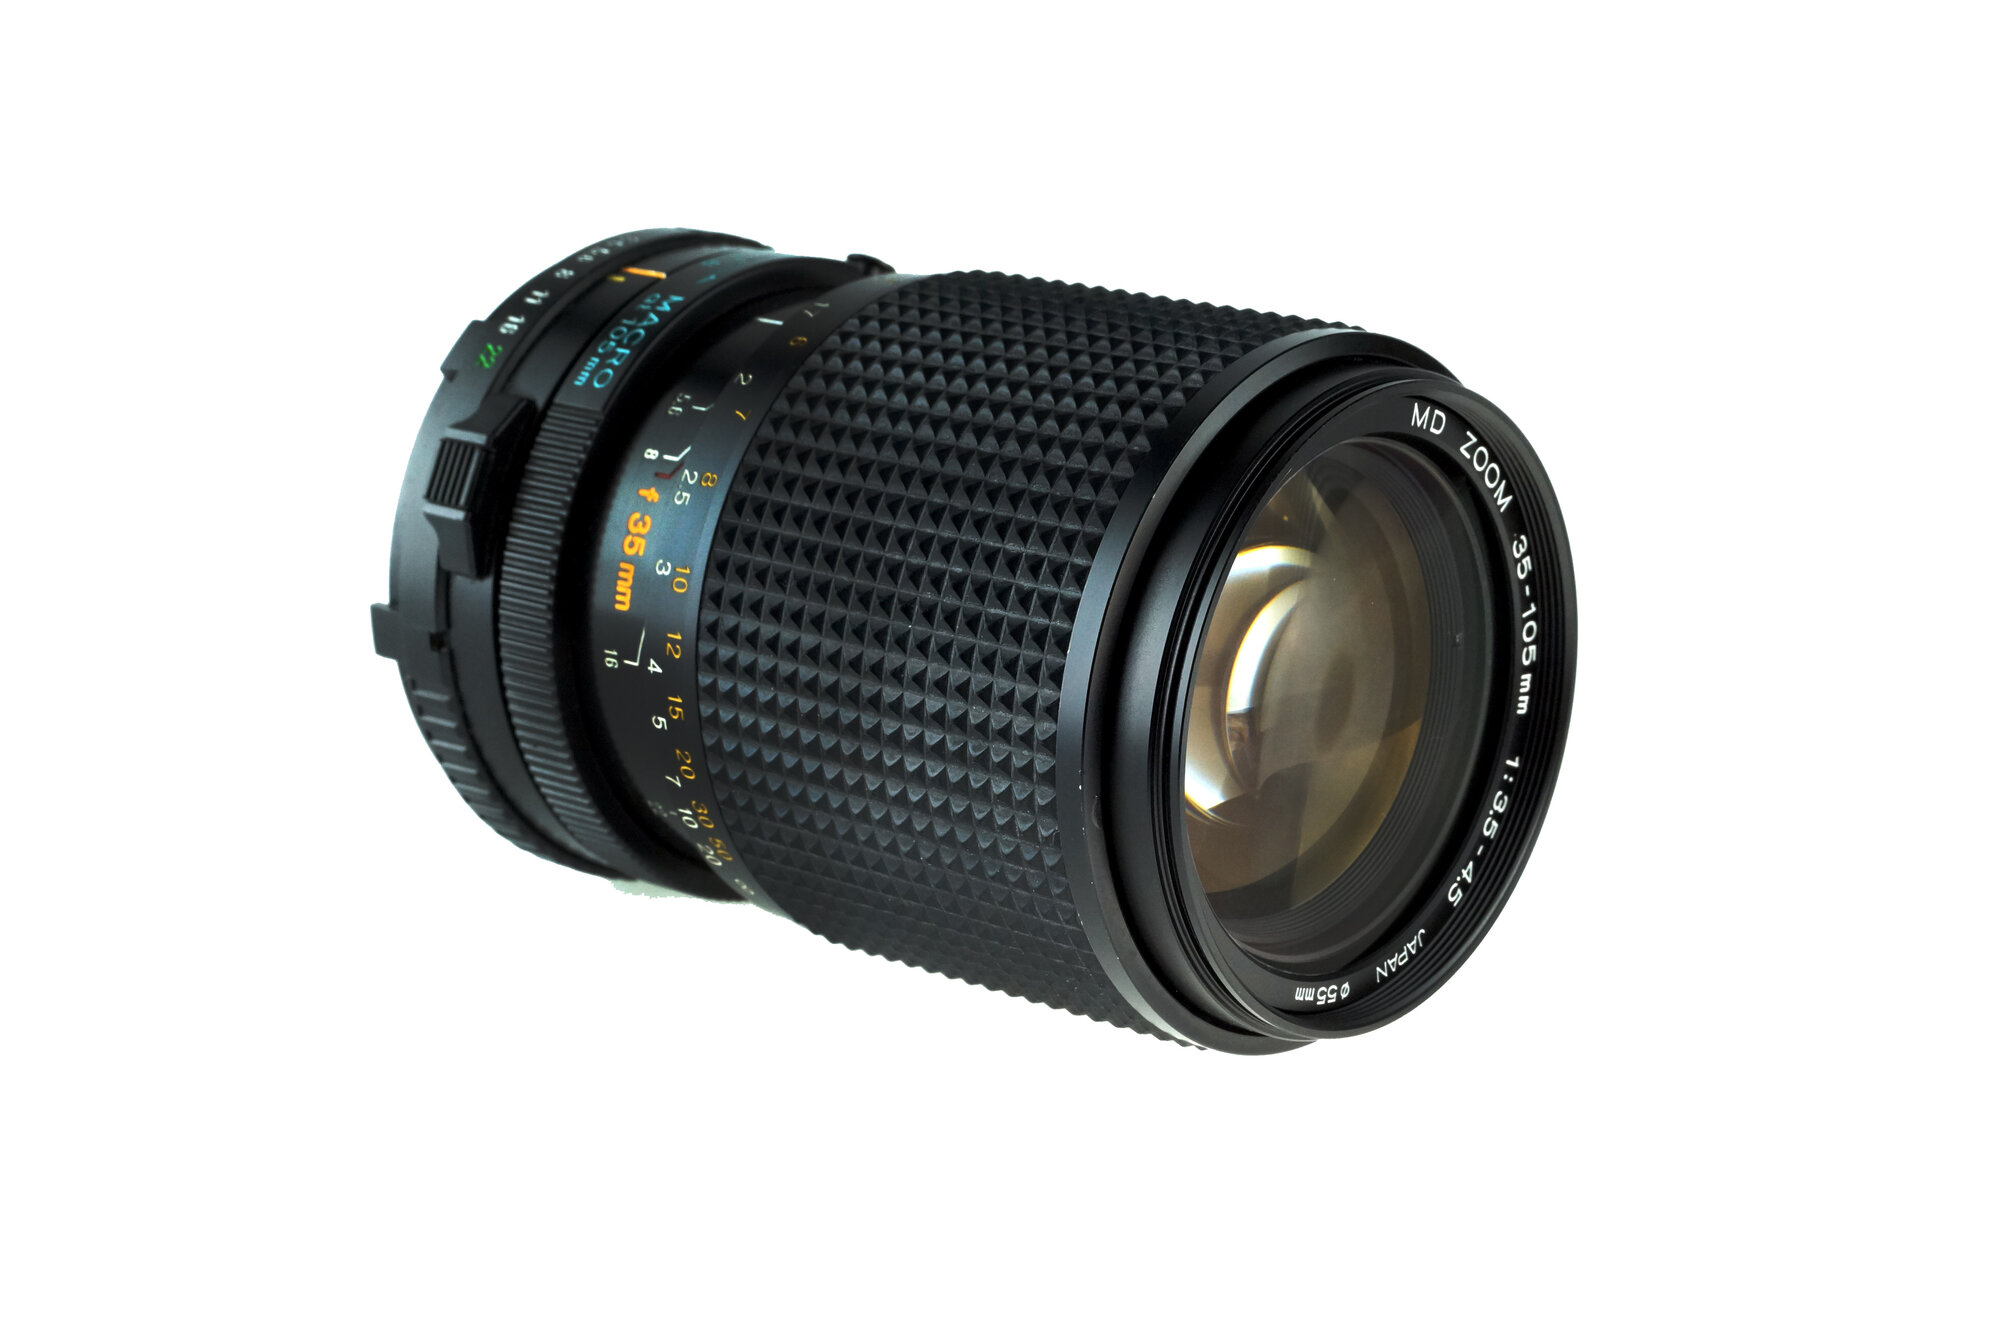 Minolta MD zoom 35-105mm f3.5-4.5